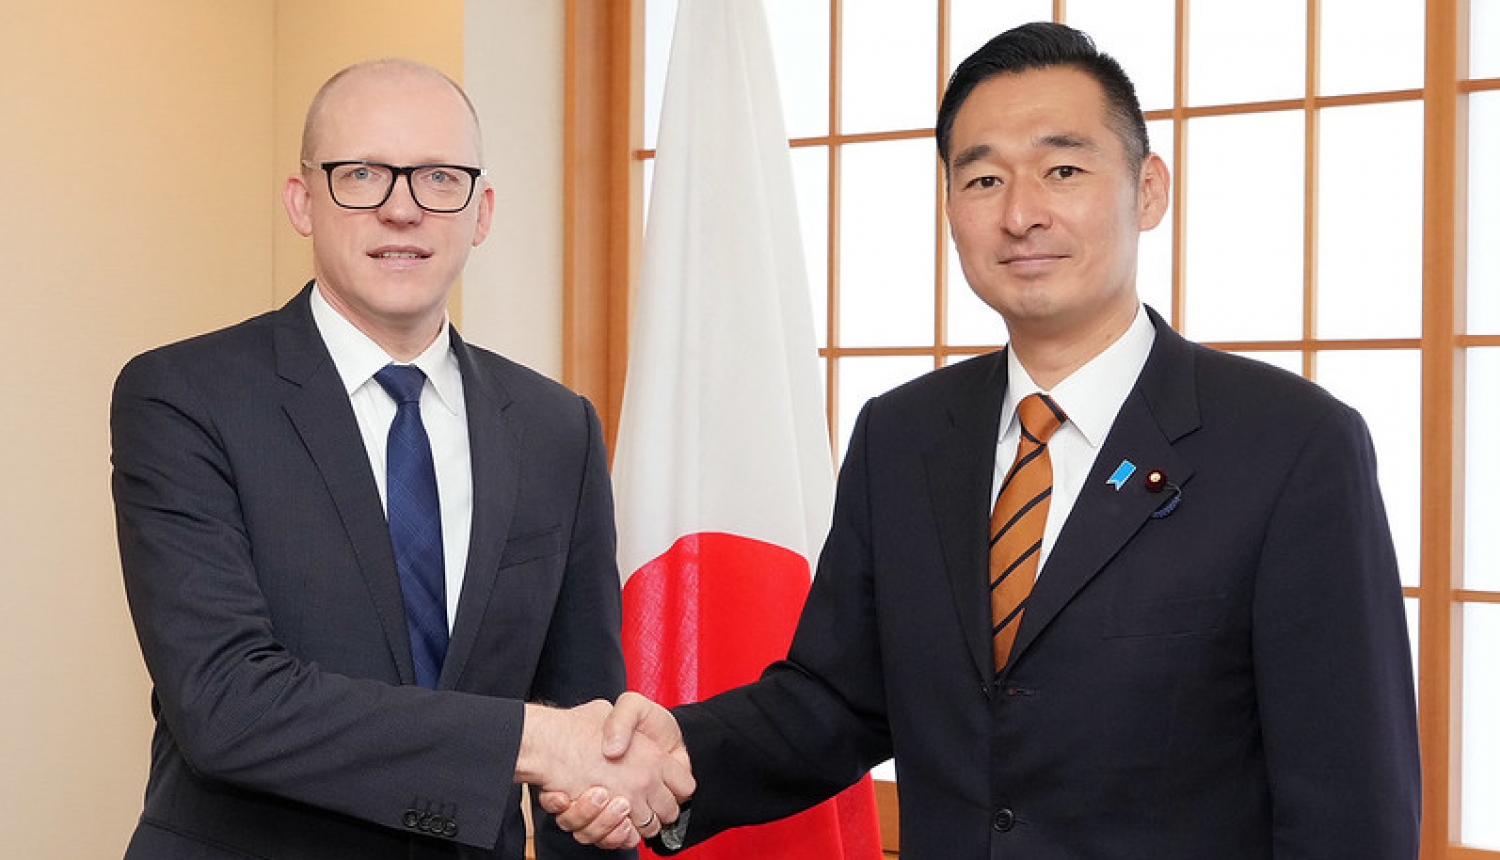 Ārlietu ministrijas valsts sekretārs Andris Pelšs tiekas ar Japānas Ārlietu ministrijas parlamentāro viceministru Joiči Fukadzavu (Yoichi Fukazawa)